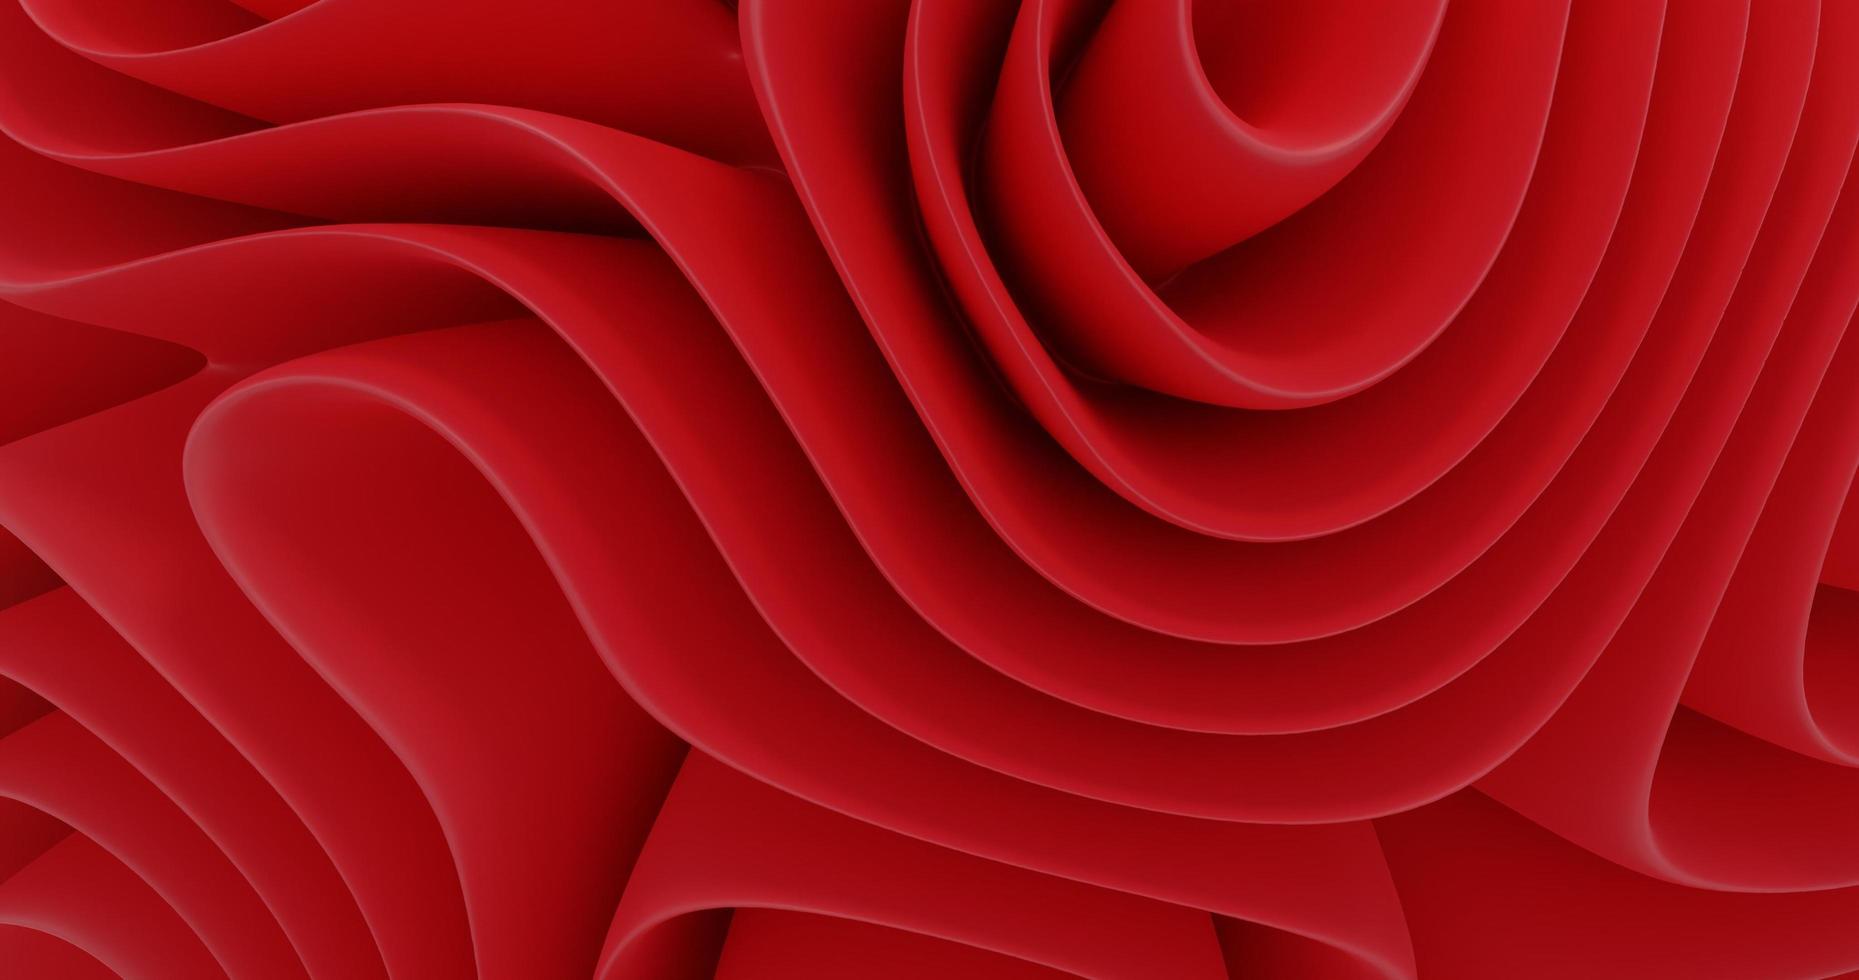 abstracte achtergrond met golvend vouwpatroon in rode kleur, 3D-rendering en 4k-formaat foto